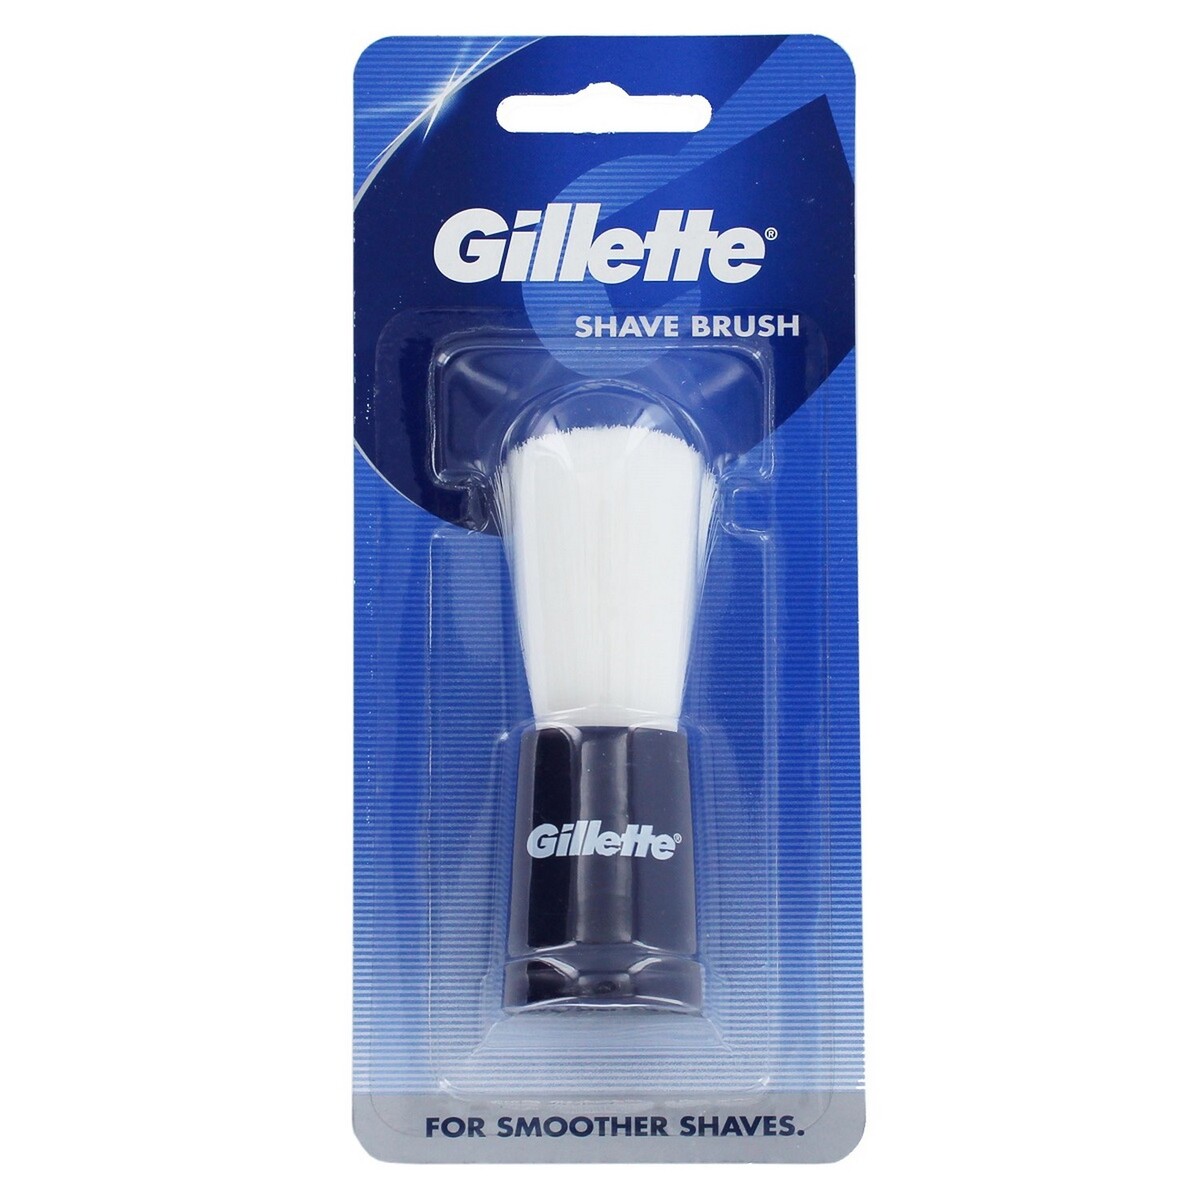 Gillette Shave Brush 1's